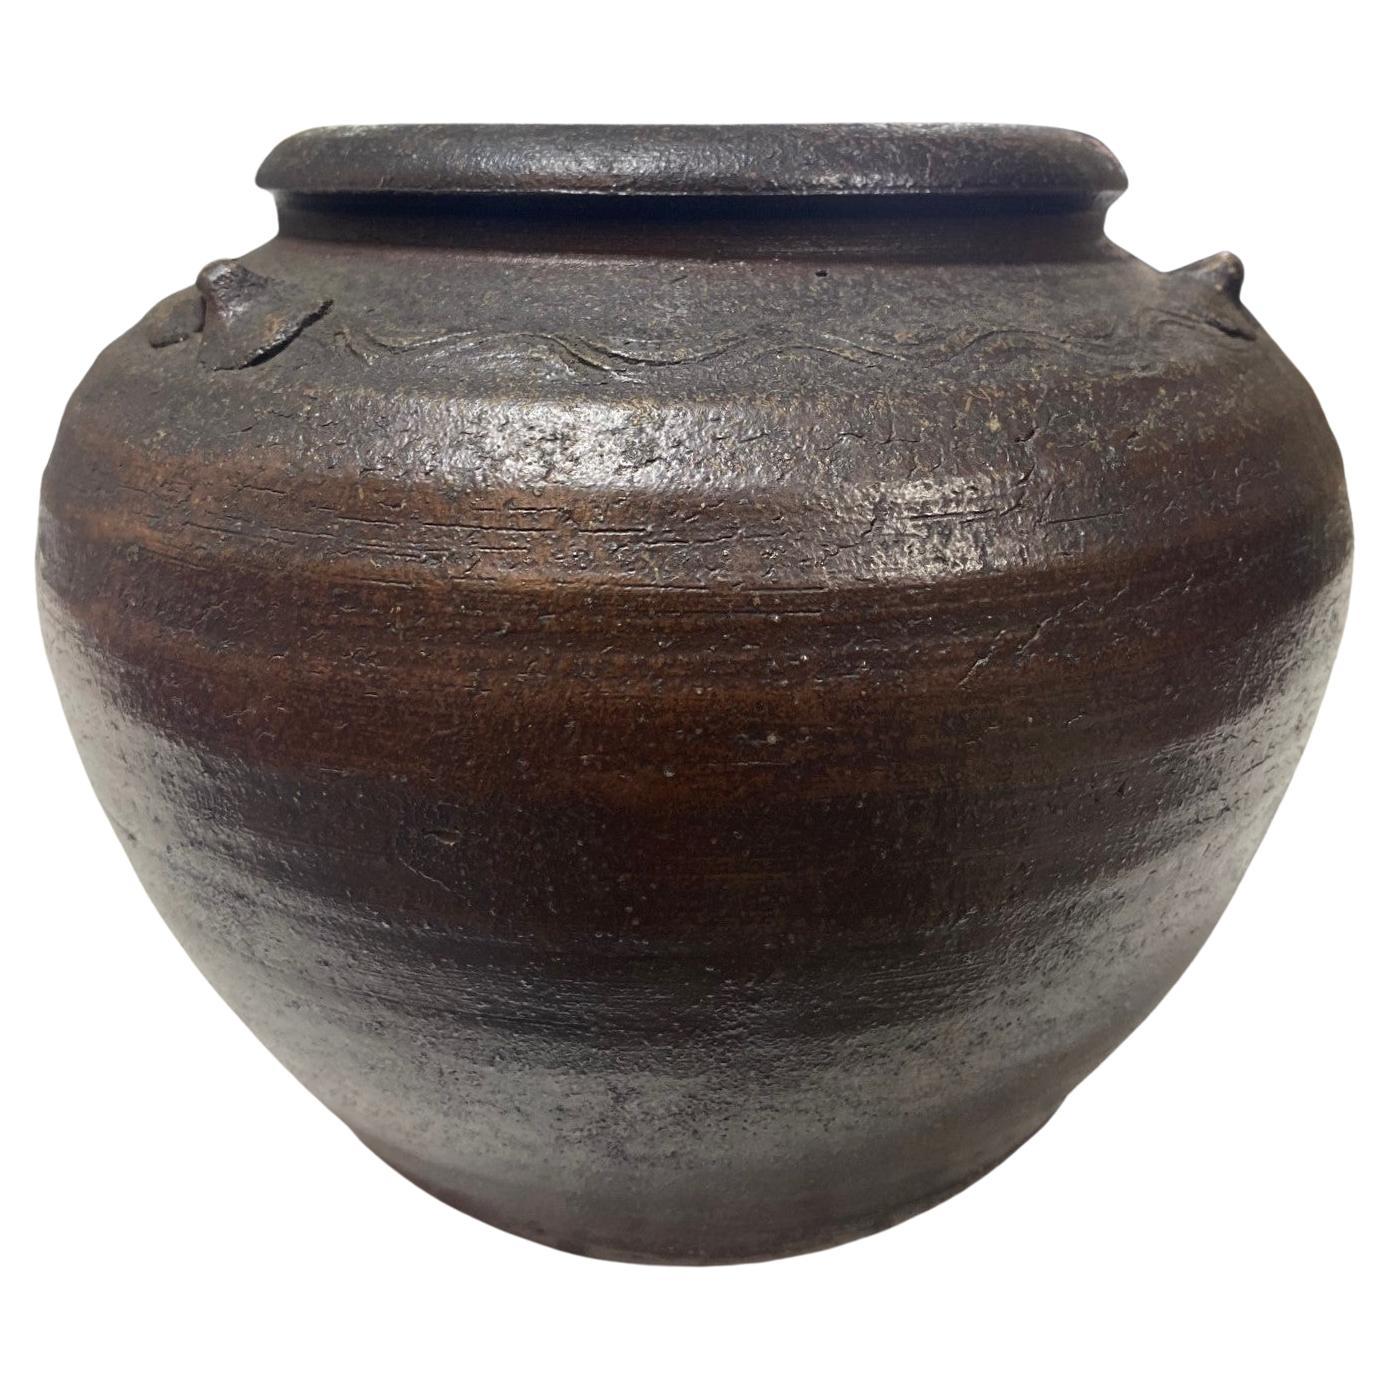 Kaneshige Toyo National Treasure Signed Japanese Bizen Pottery Tsubo Jar Vase